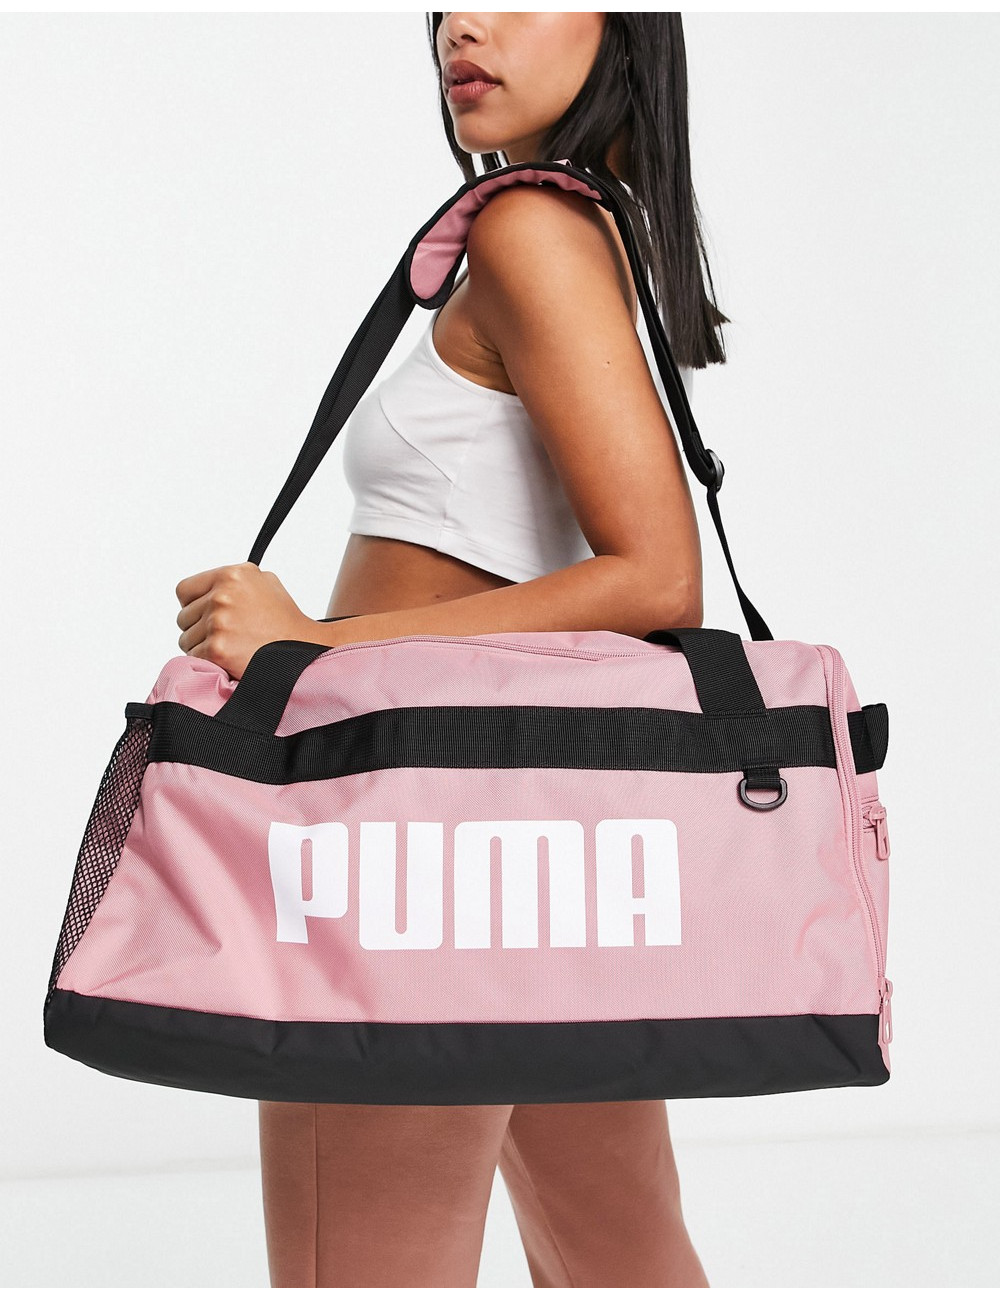 Puma Challenger duffel bag...